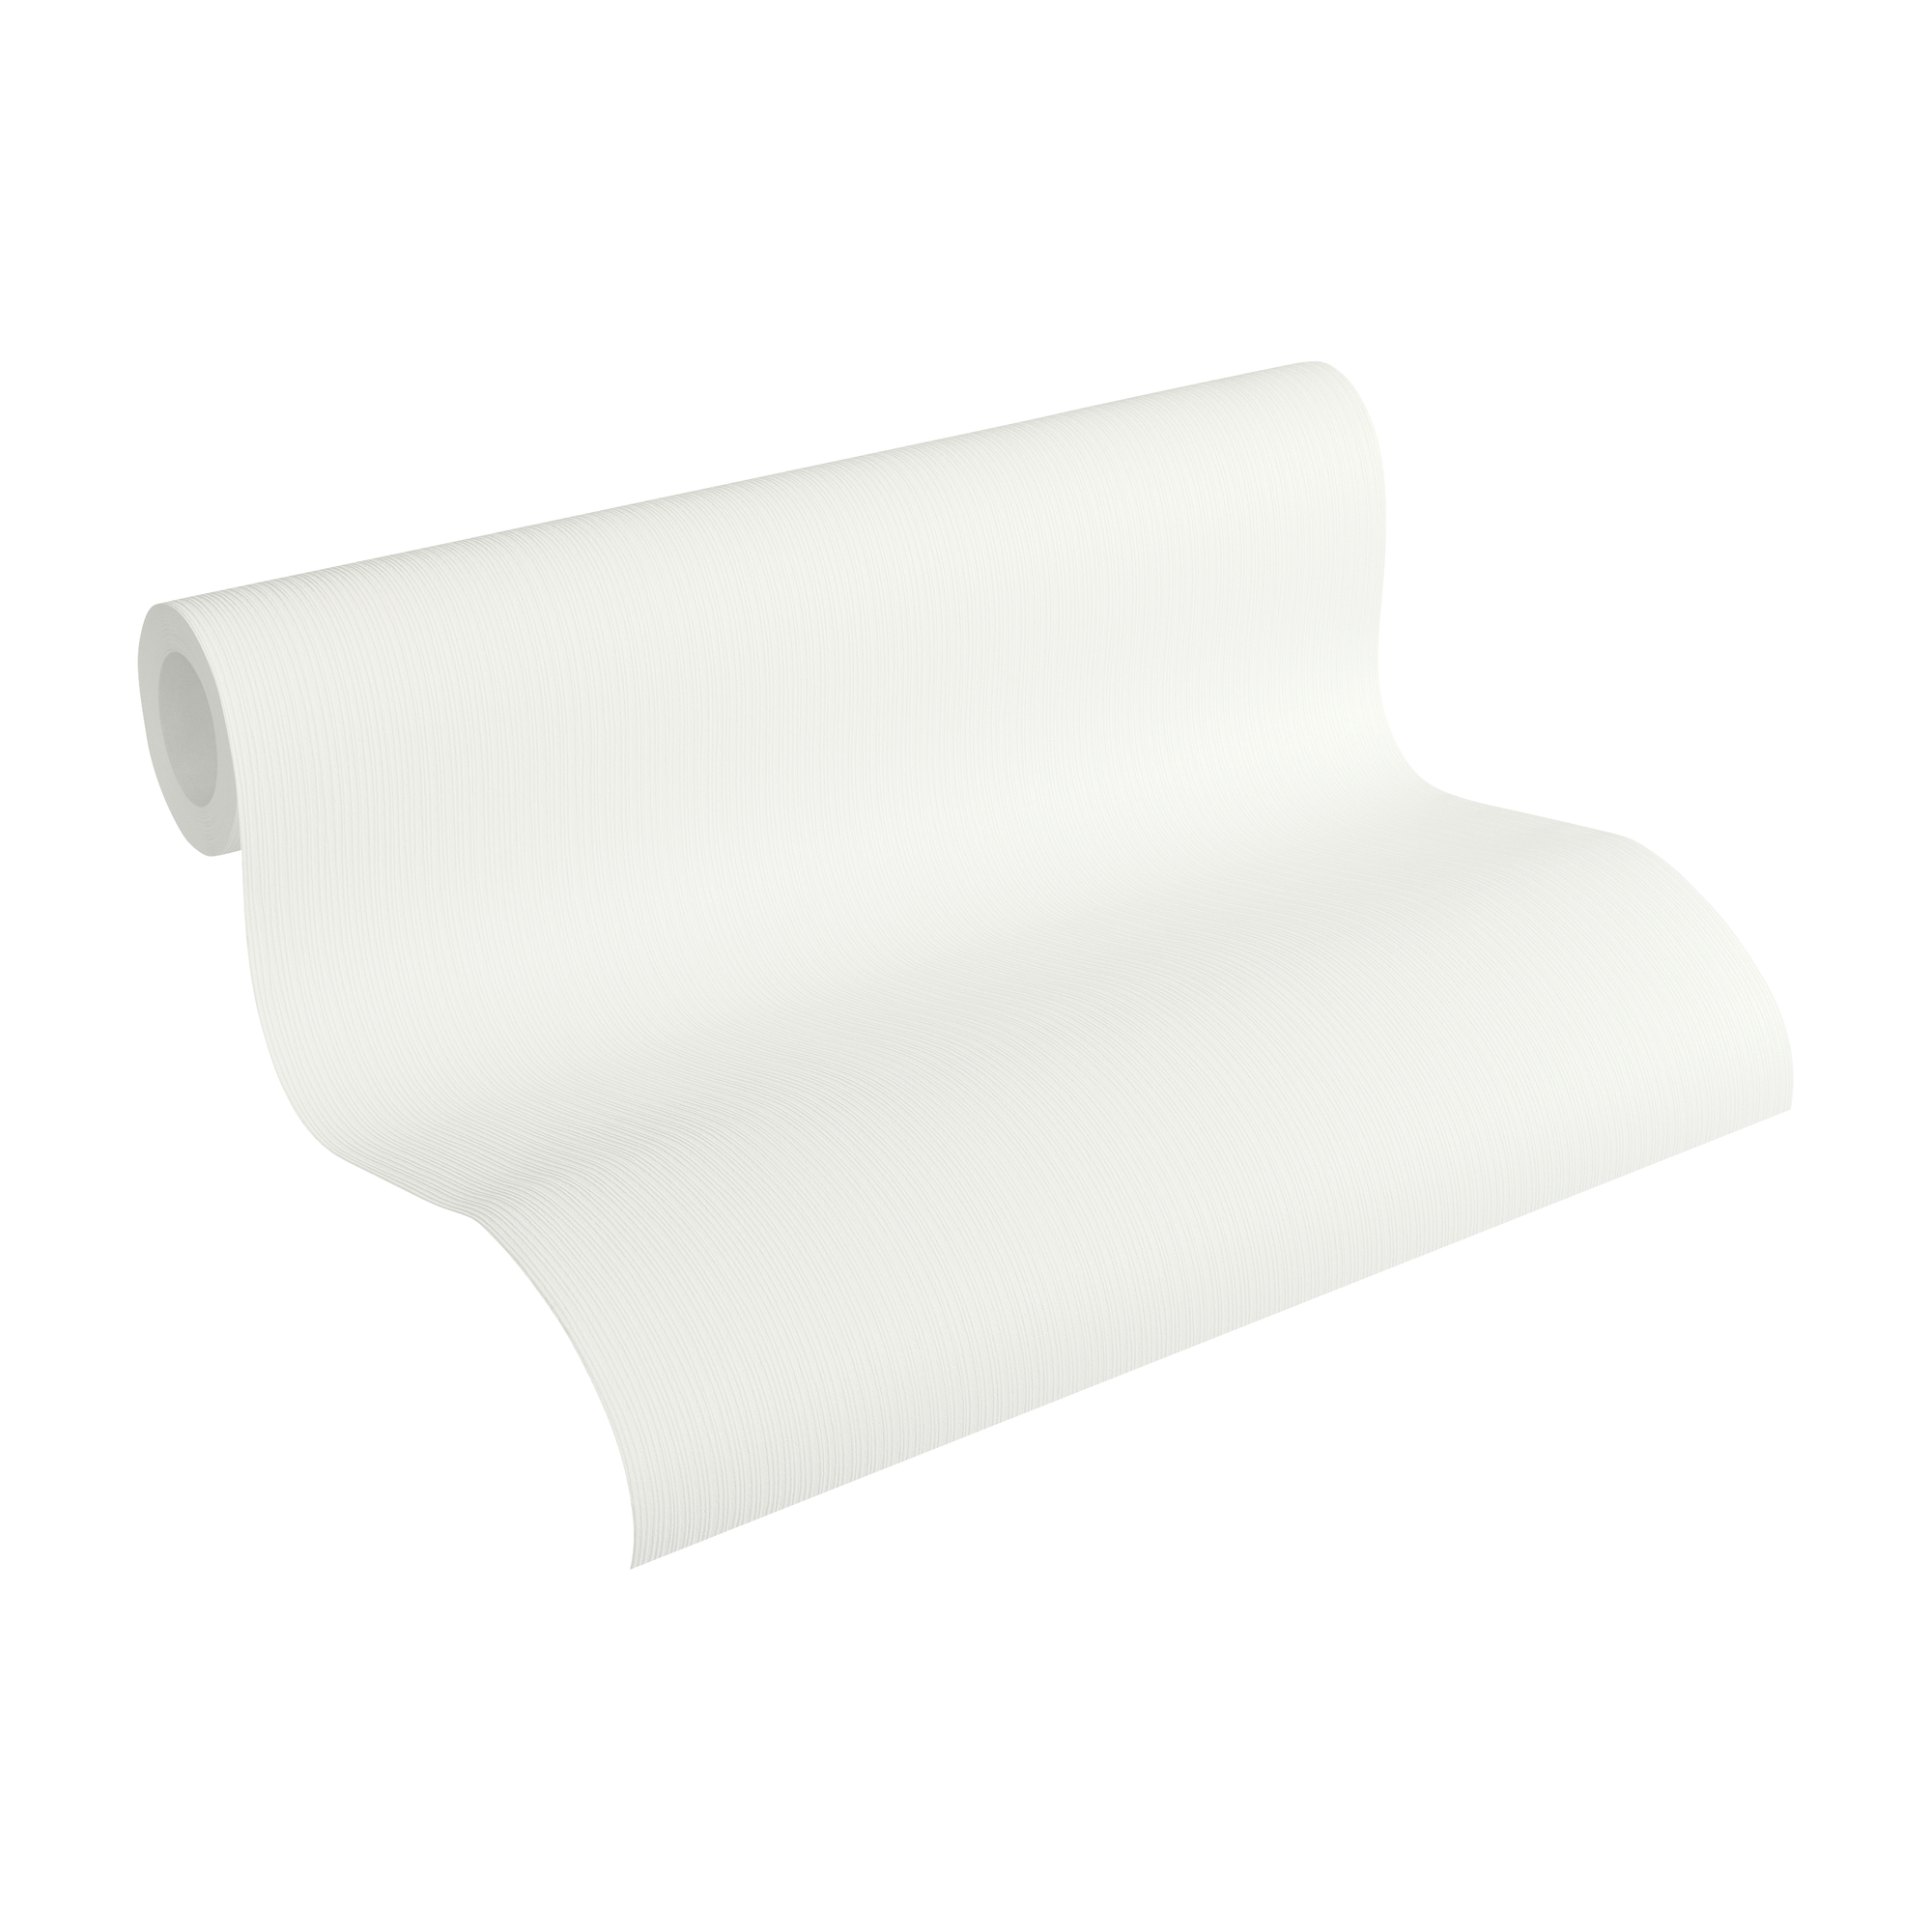 Vliestapete 'Shades of White' Streifen weiß 10,05 x 0,53 m + product picture